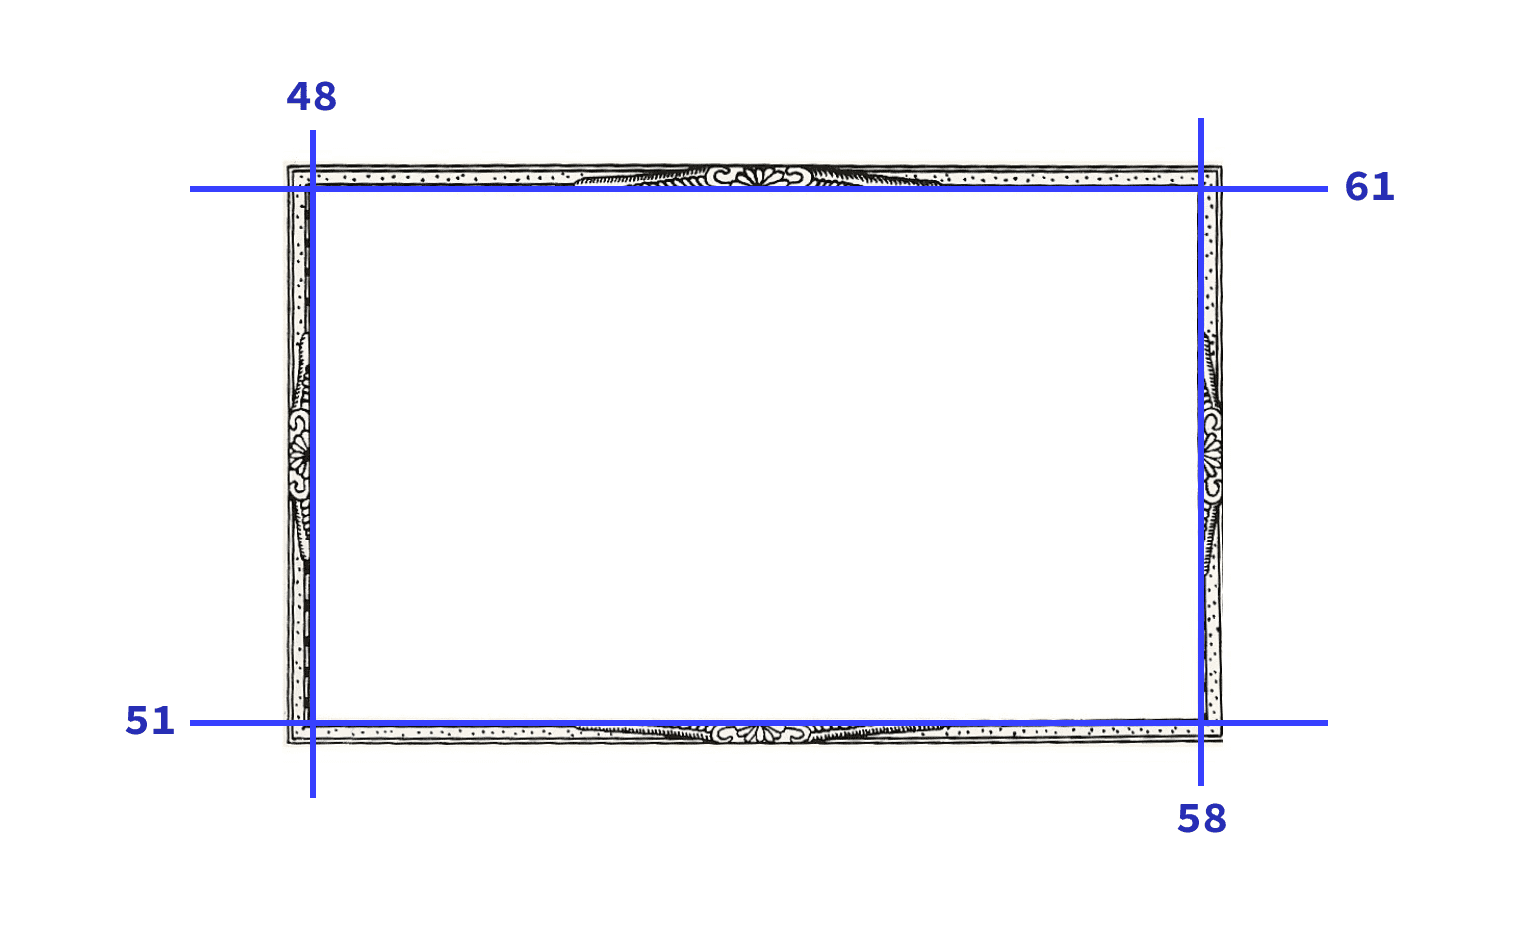 ภาพที่ใช้ในการสาธิตที่มีส่วน 4 ส่วนที่แสดงด้วยเส้นสีฟ้า